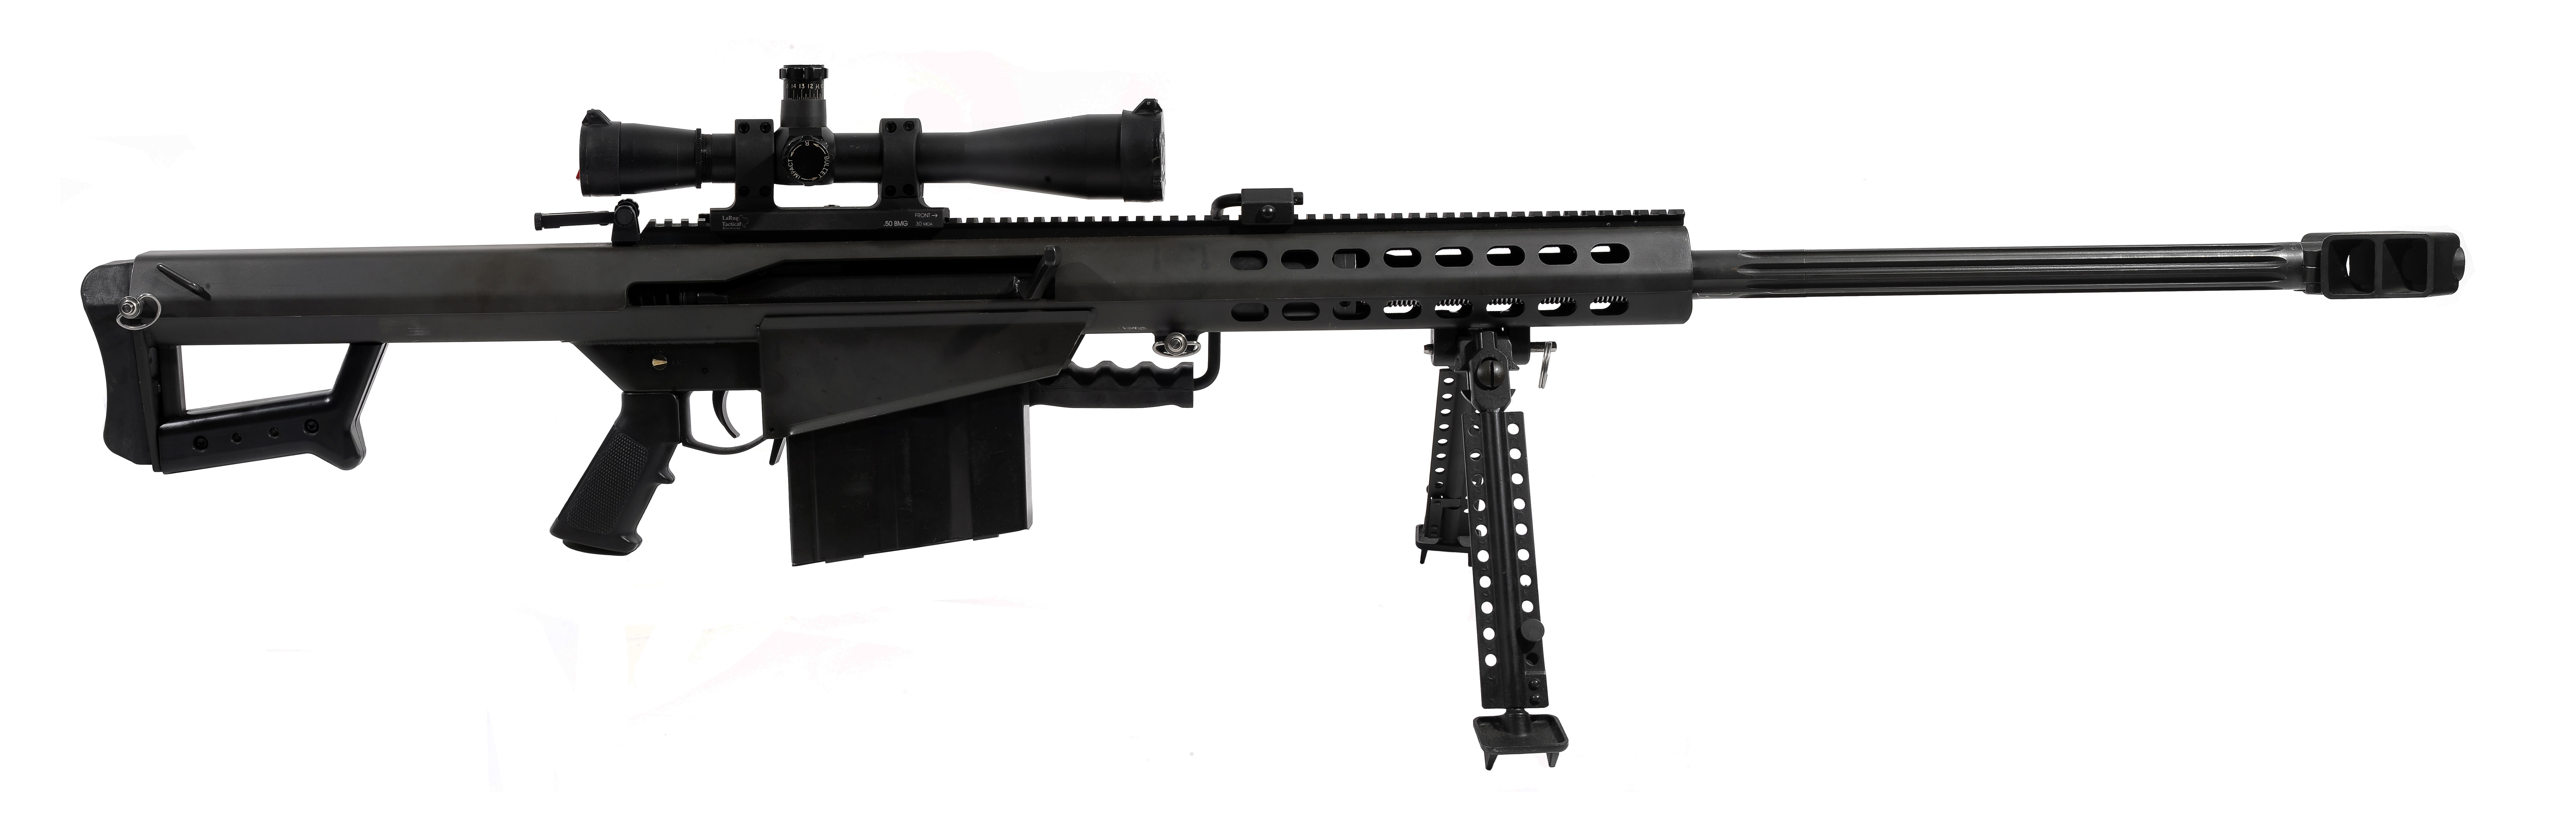 HQ Barrett M82 Sniper Rifle Wallpapers | File 1039.16Kb